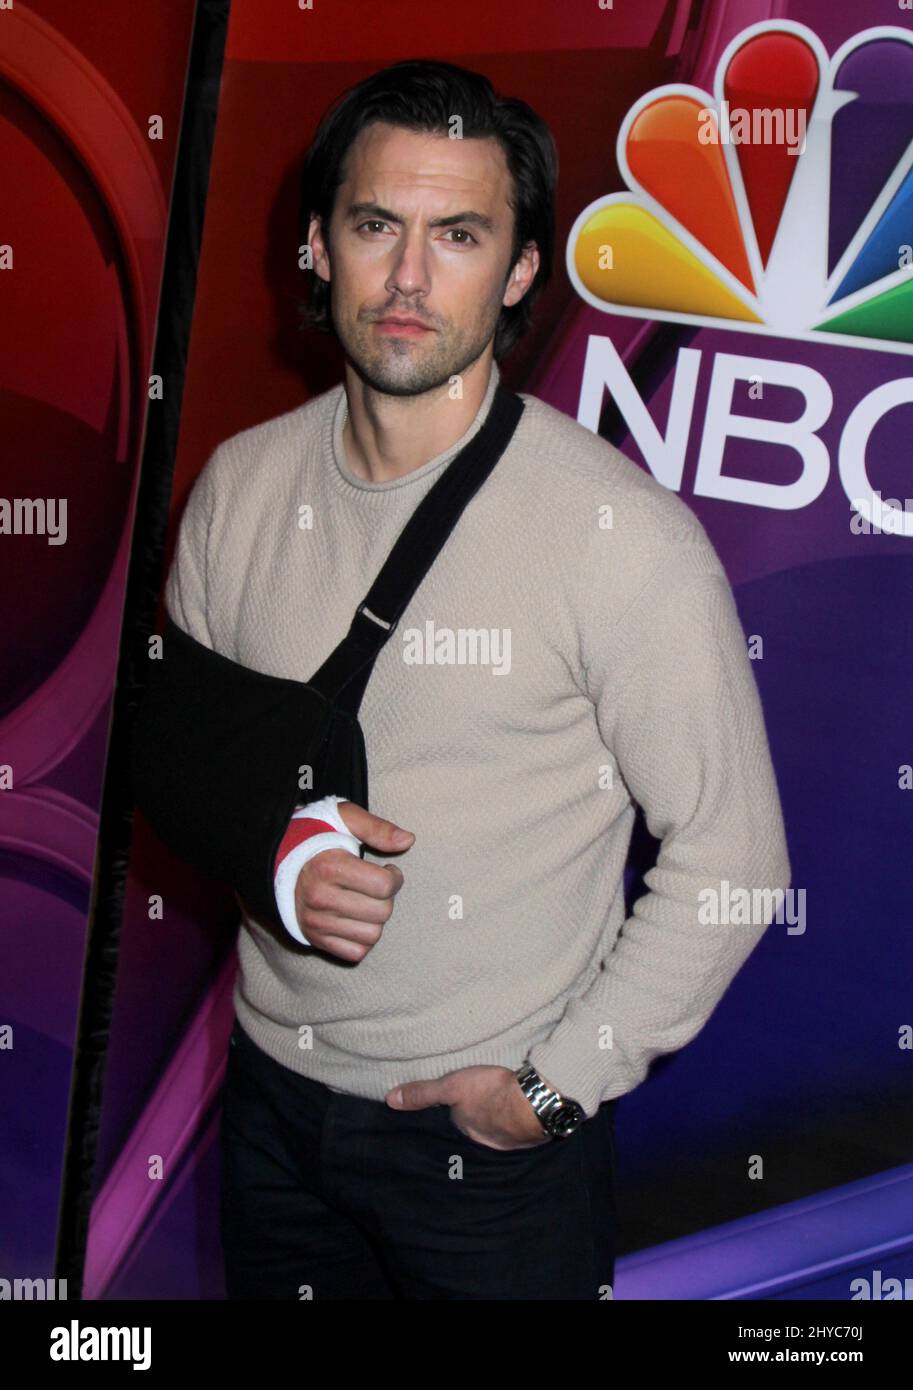 Milo Ventimiglia attending the NBC Mid Season Press Day in New York Stock Photo